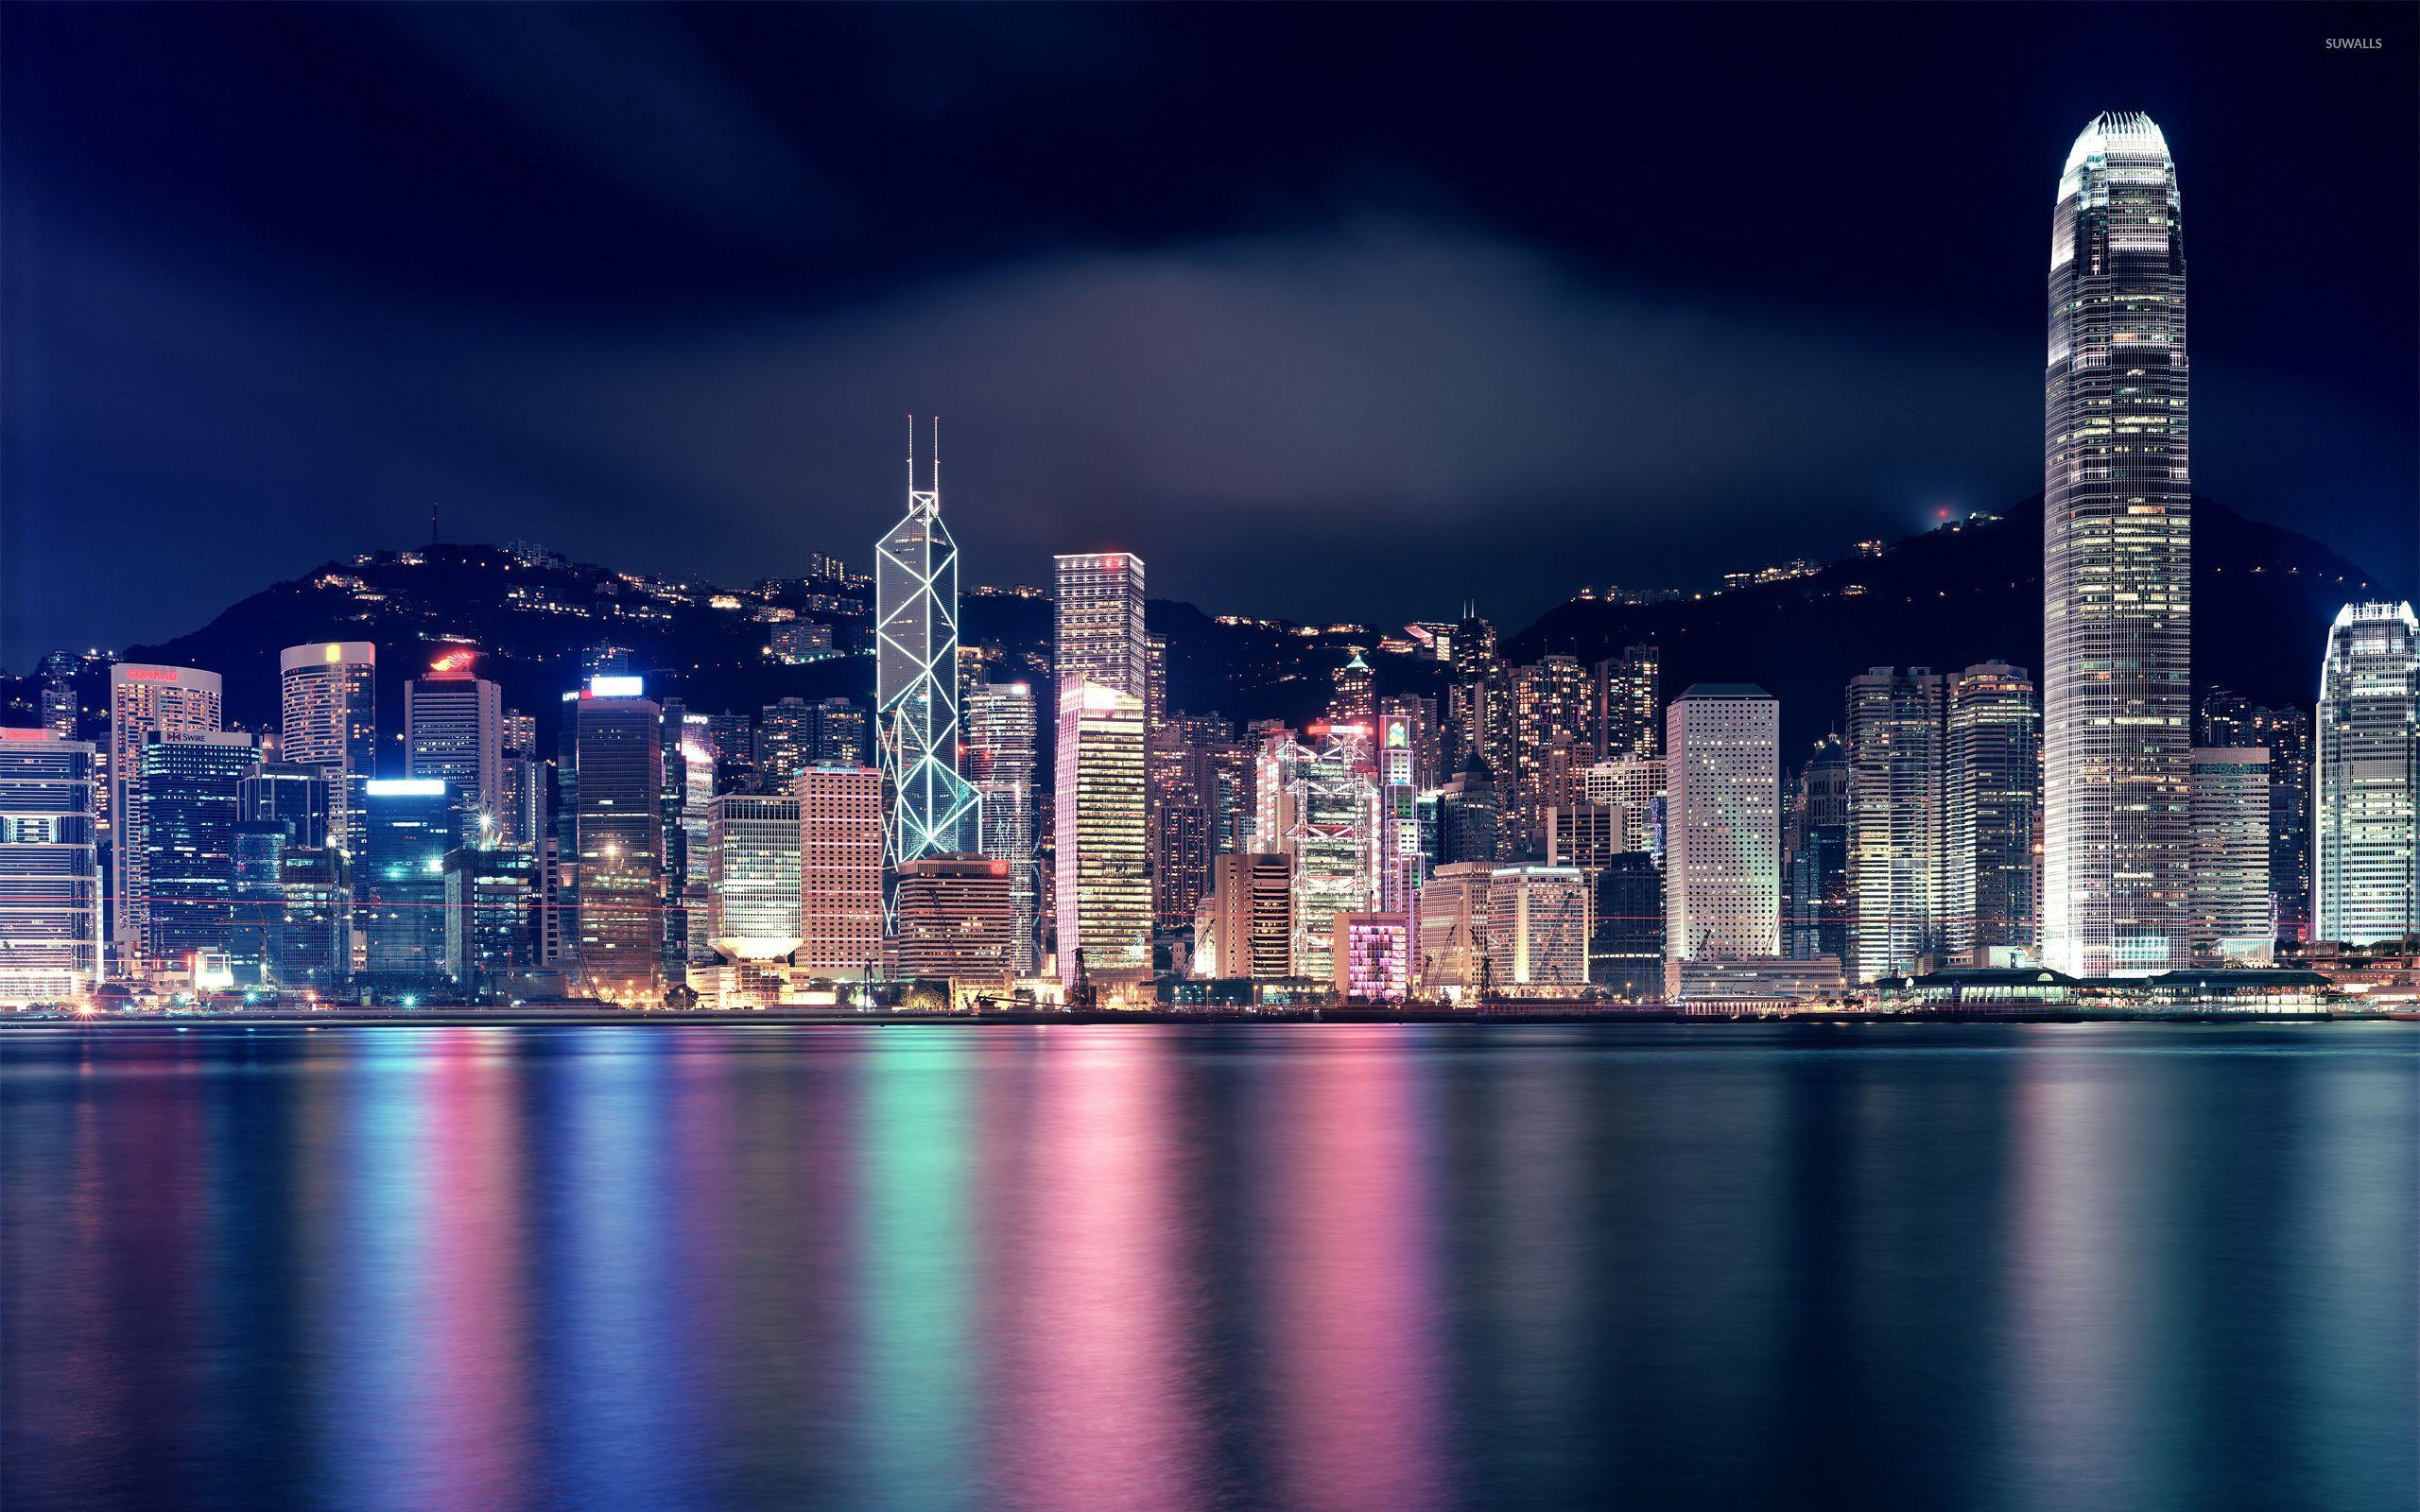 Hồng Kông là một trong những địa danh đẹp nhất thế giới. Nơi đây tổng hợp nét văn hóa phương Tây và châu Á. Chiêm ngưỡng những bức ảnh về Hồng Kông để khám phá vẻ đẹp tuyệt vời của nơi đây.